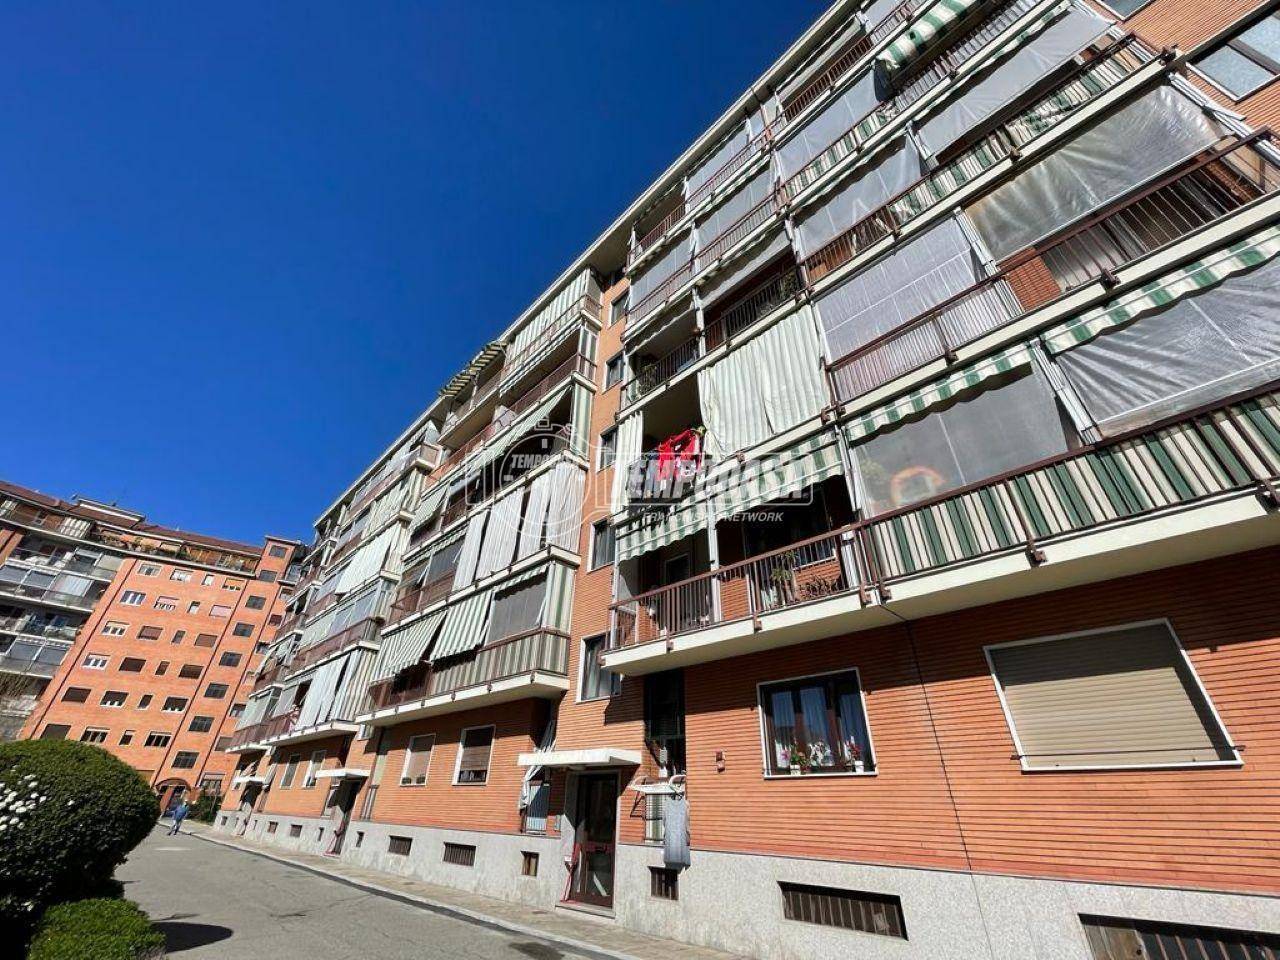 Vendita Appartamento Torino. Trilocale in via lanzo 175/A. Ottimo stato,  quarto piano, con balcone, riscaldamento centralizzato, rif. 101586609